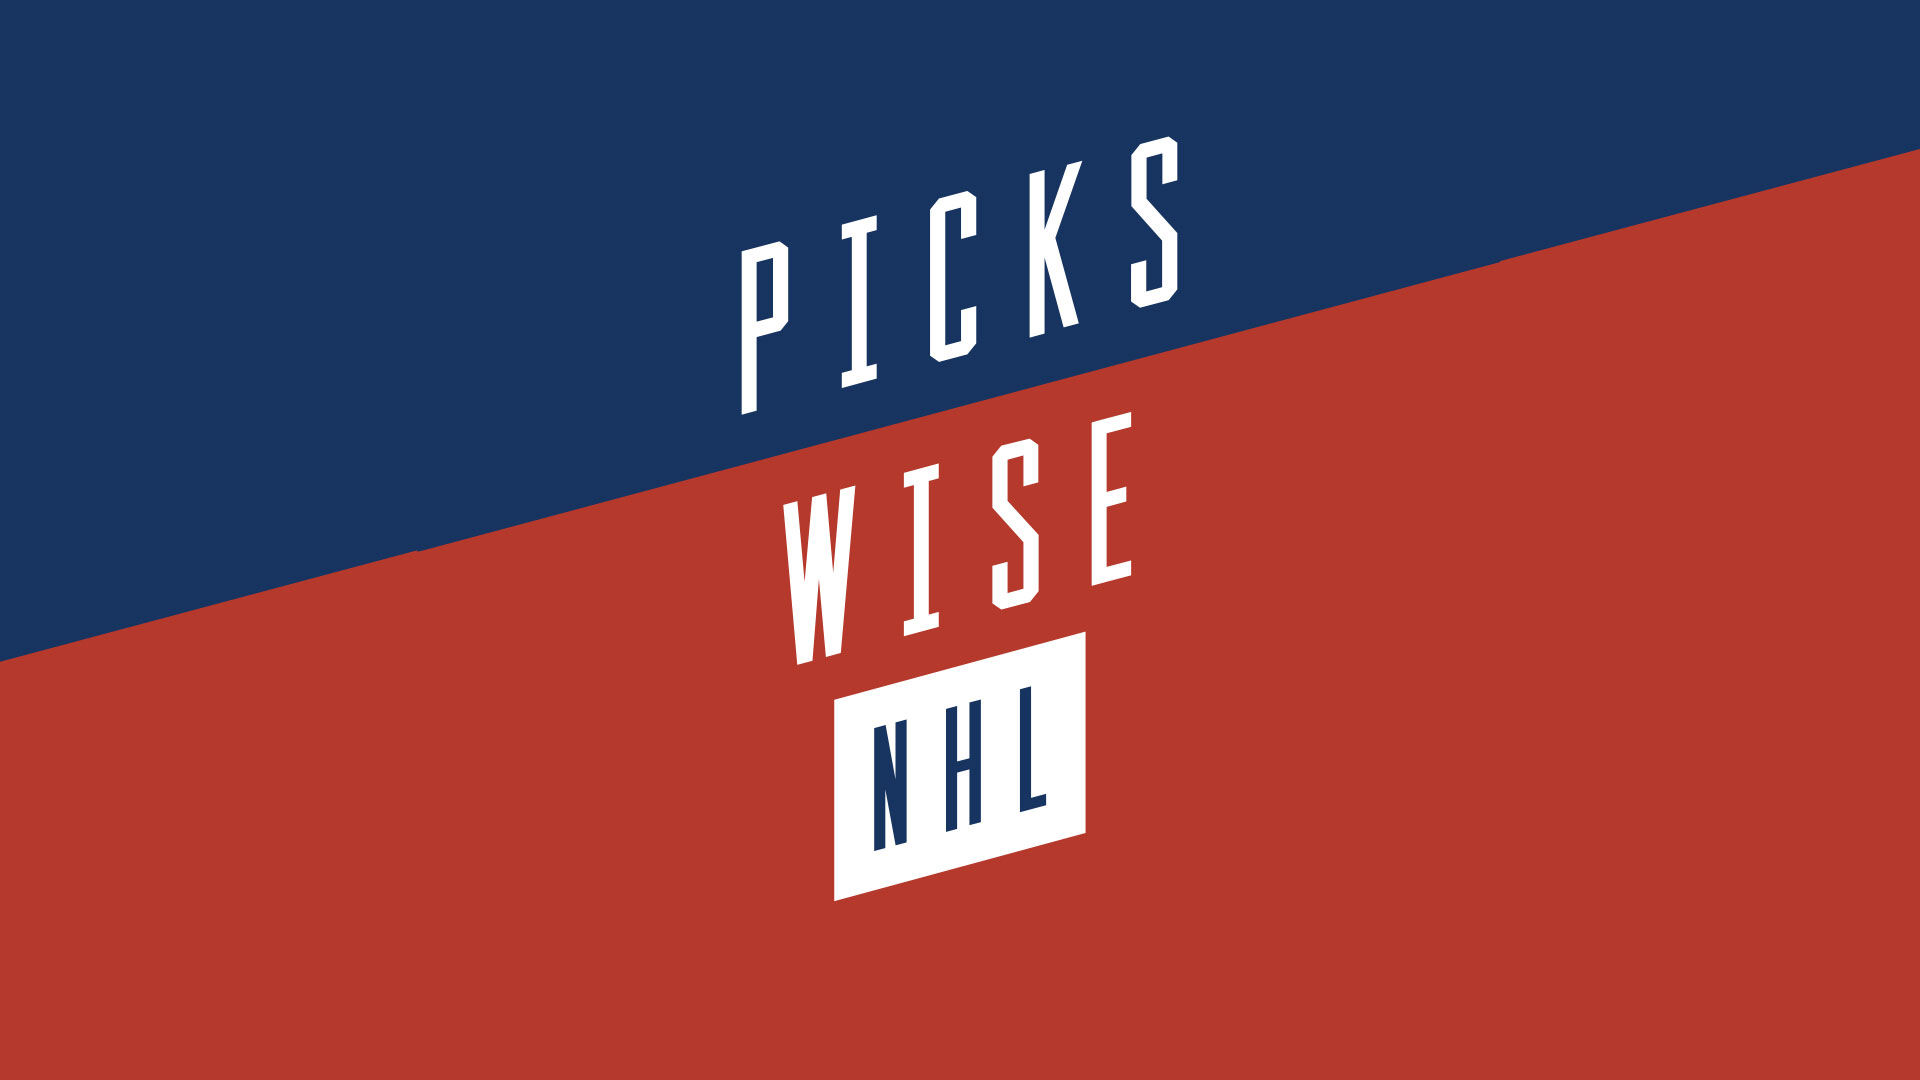 Pickwise Week 2 NHL Power Rankings